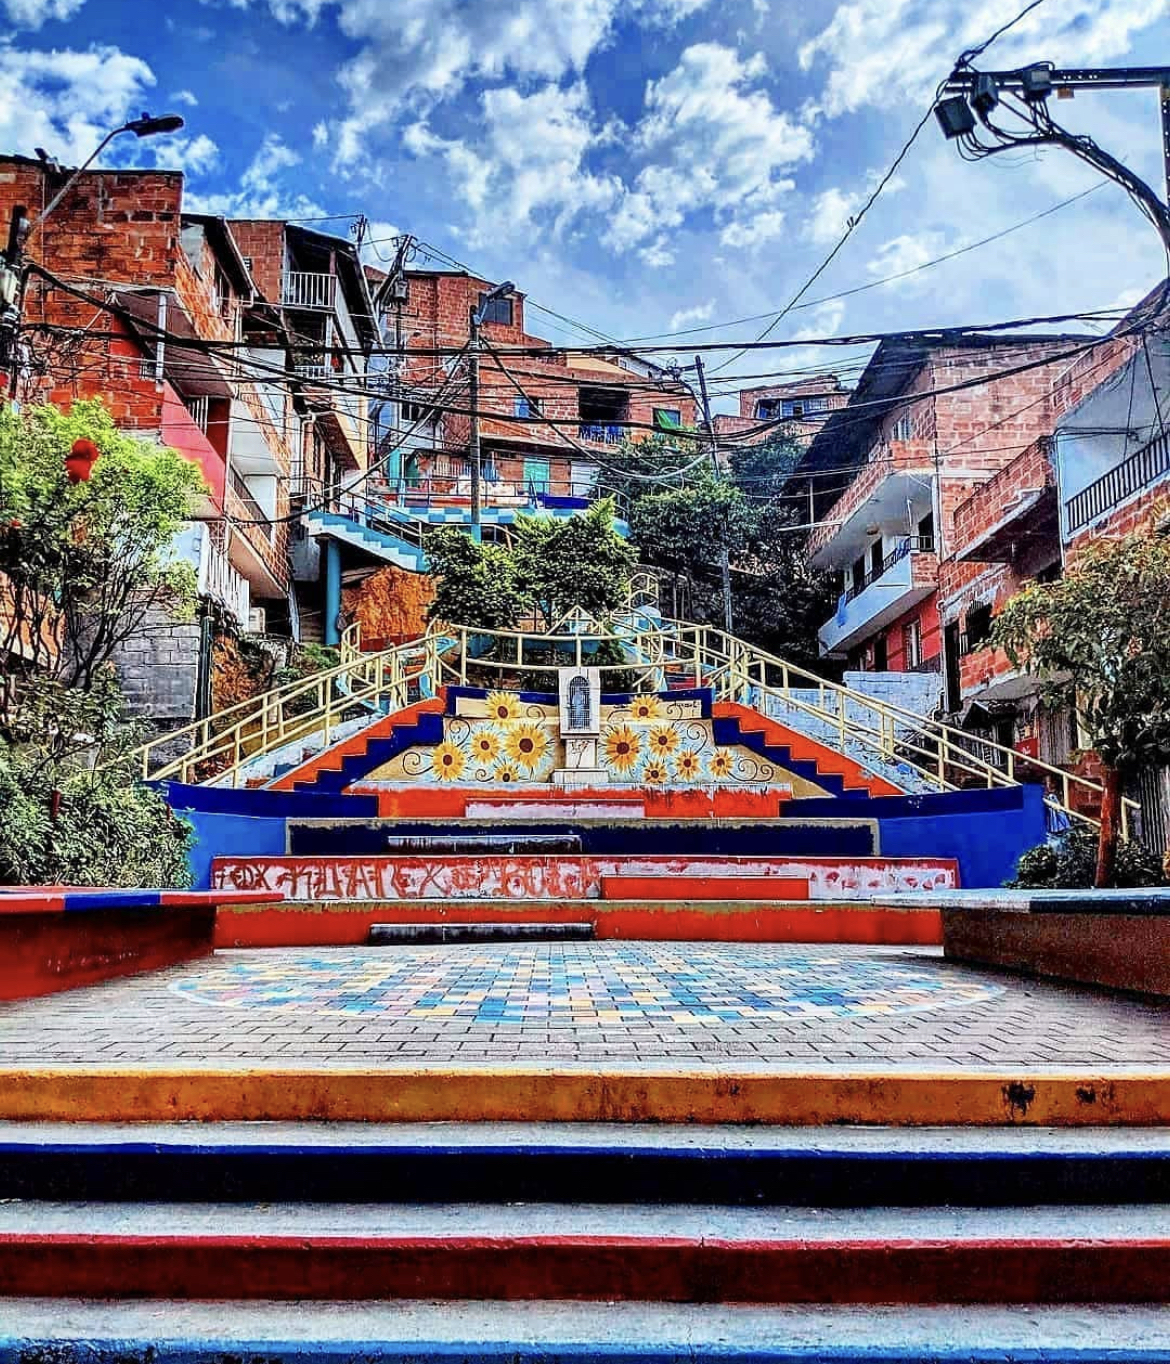 A surpreendente Medellín